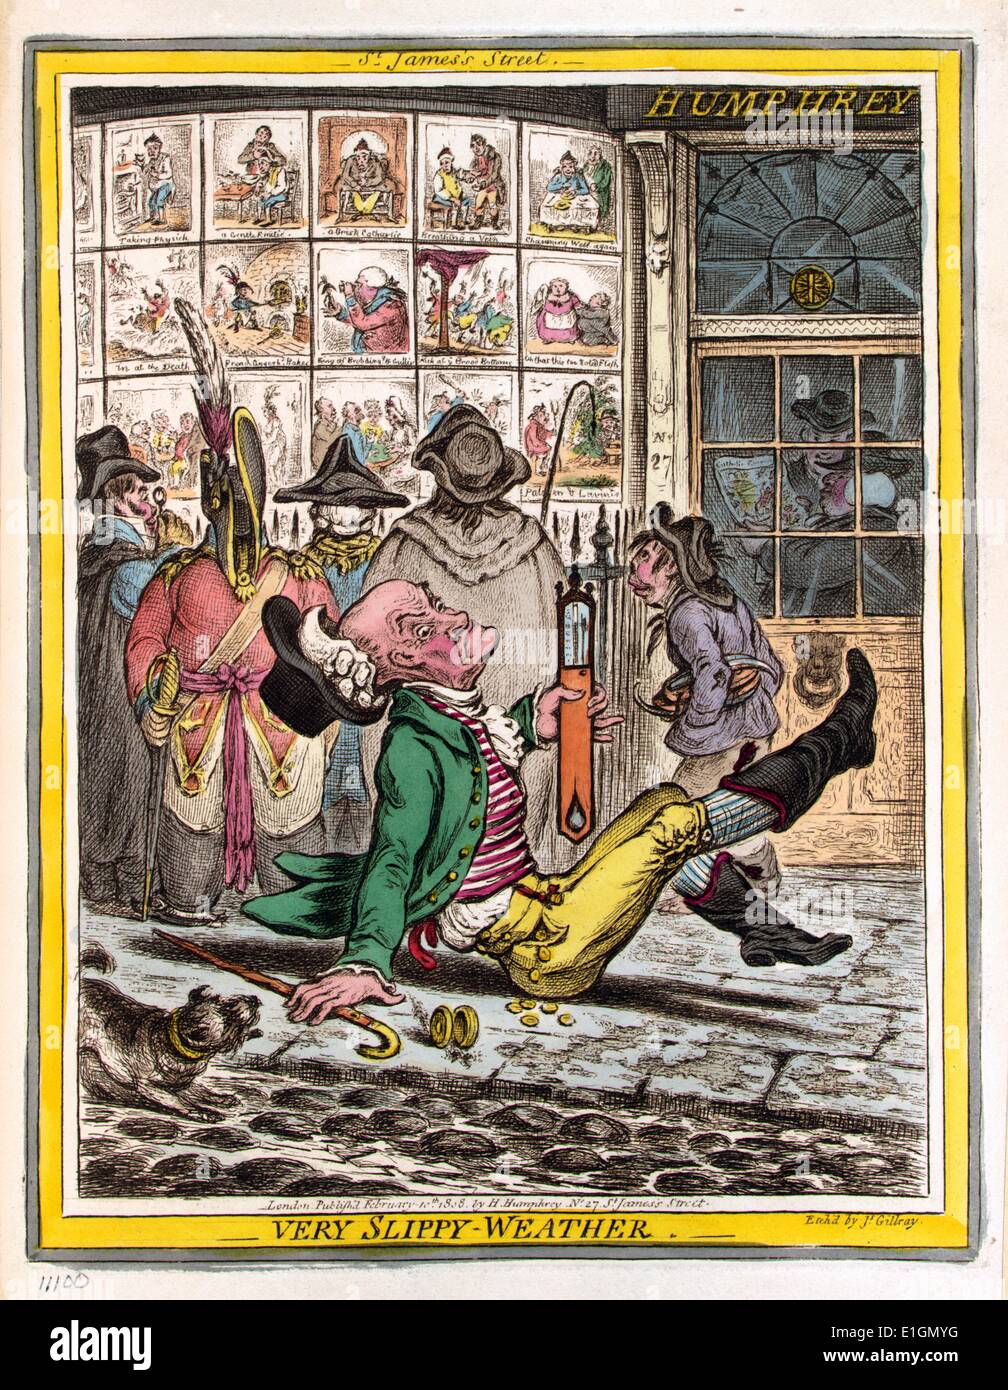 Handcolorierte Radierung stellt einen älteren Mann, der gerutscht ist und auf dem Bürgersteig außerhalb Humphrey's Druckerei an Nr. 27 St. James's Street, London gefallen. Er ist ein Thermometer, die er aufrecht halten, hinter ihm sind fünf Personen an Karikaturen gedruckt von Humphrey, die sich auf die Anzeige in der windows-Shop suchen. Von James Gillray (1756-1815) Britischer Karikaturist und Grafiker bekannt für seine geätzt politische und soziale Satiren erstellt. Vom 1808 Stockfoto